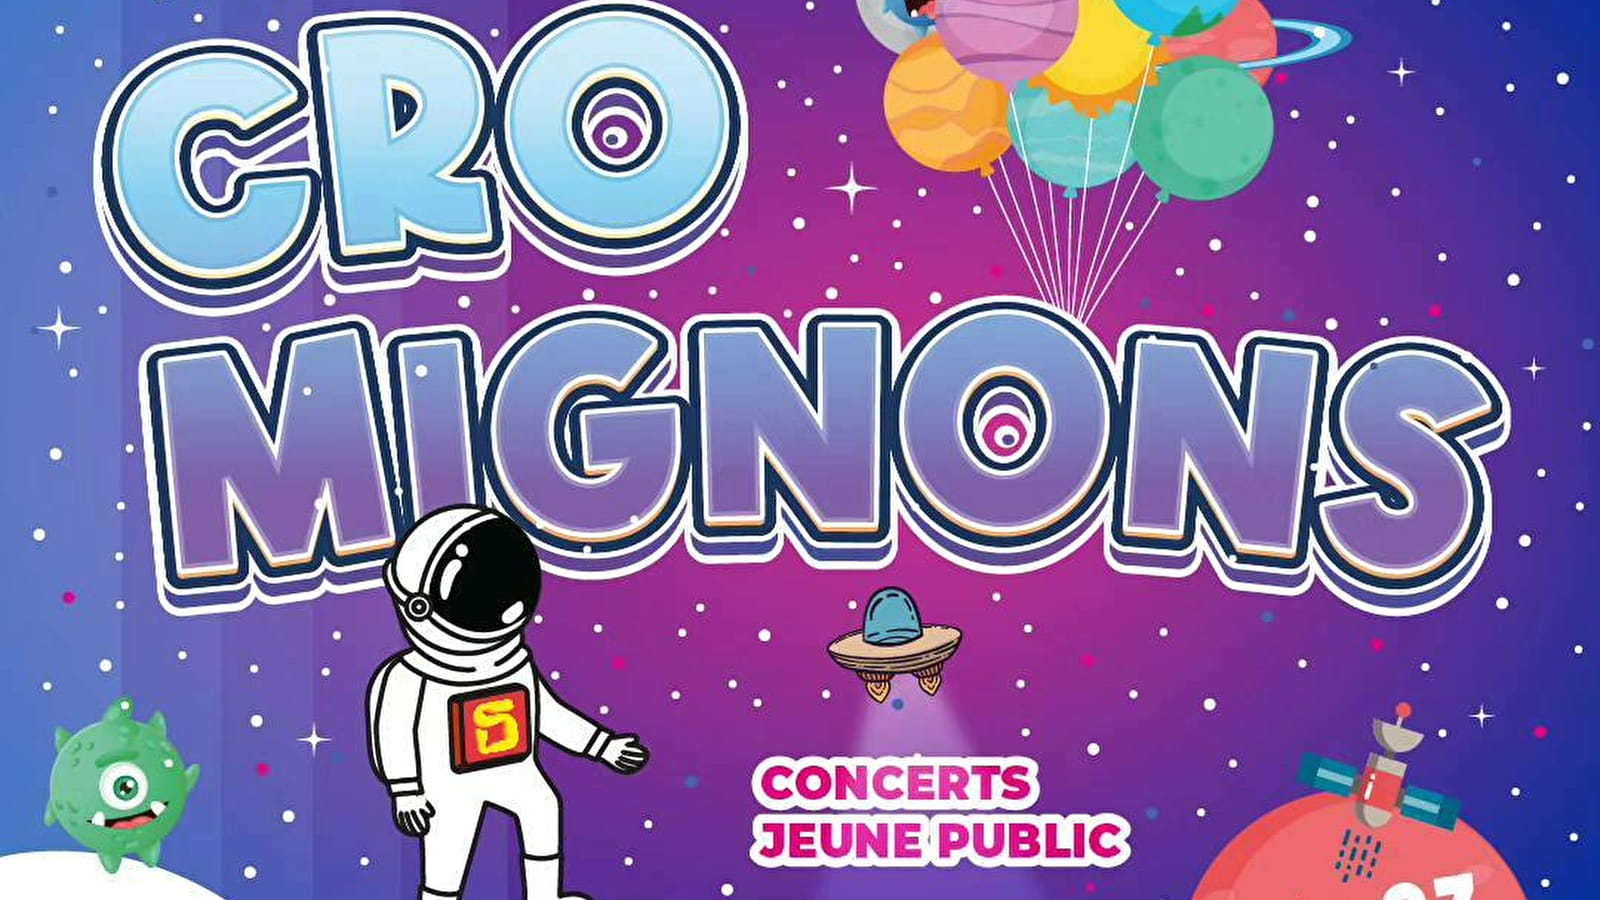 Festival Cro-Mignons